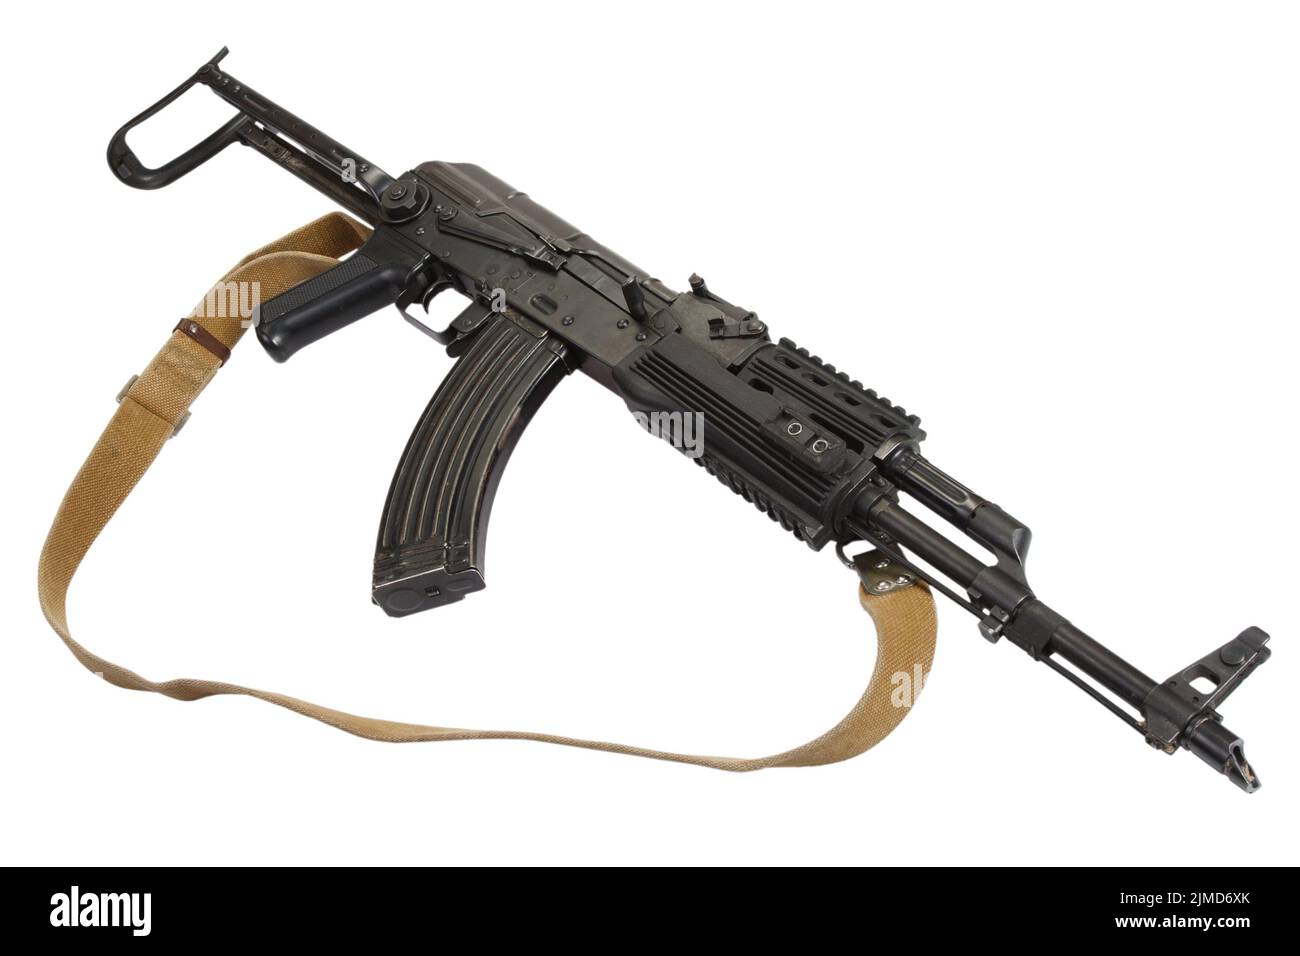 Kalashnikov AK47 with folding stock isolated on white Stock Photo